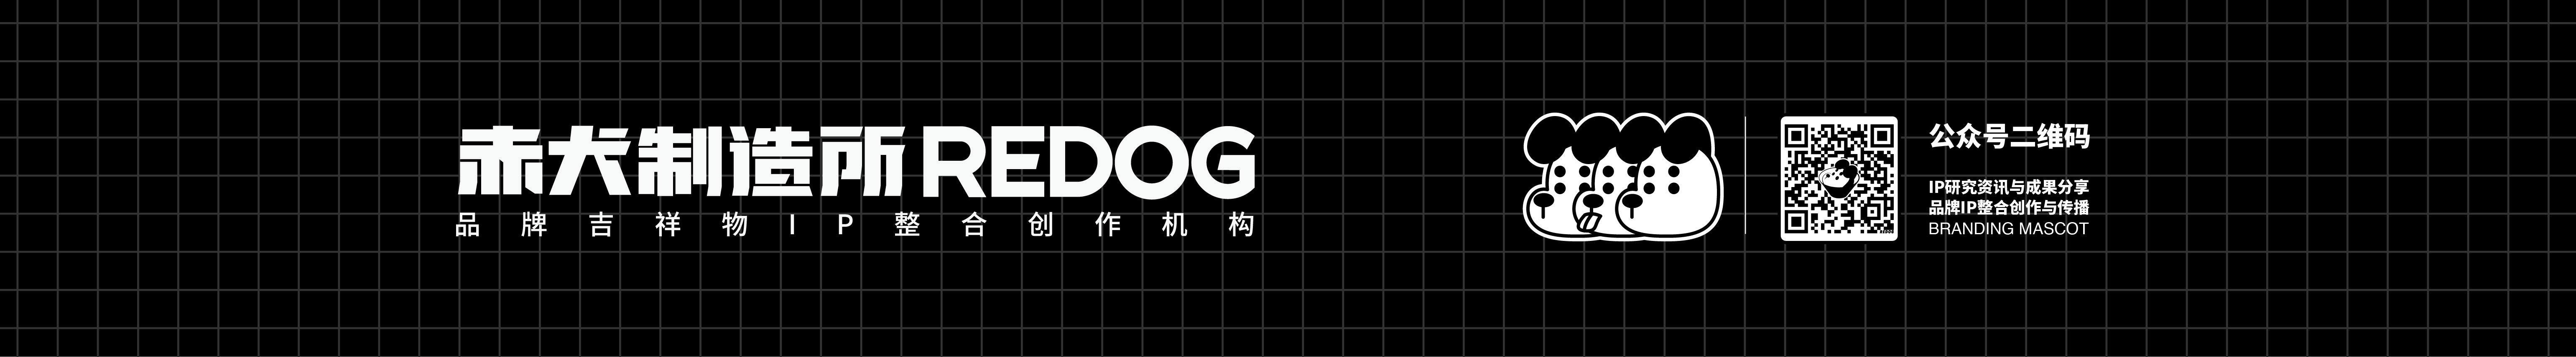 赤犬制造所 REDOG's profile banner